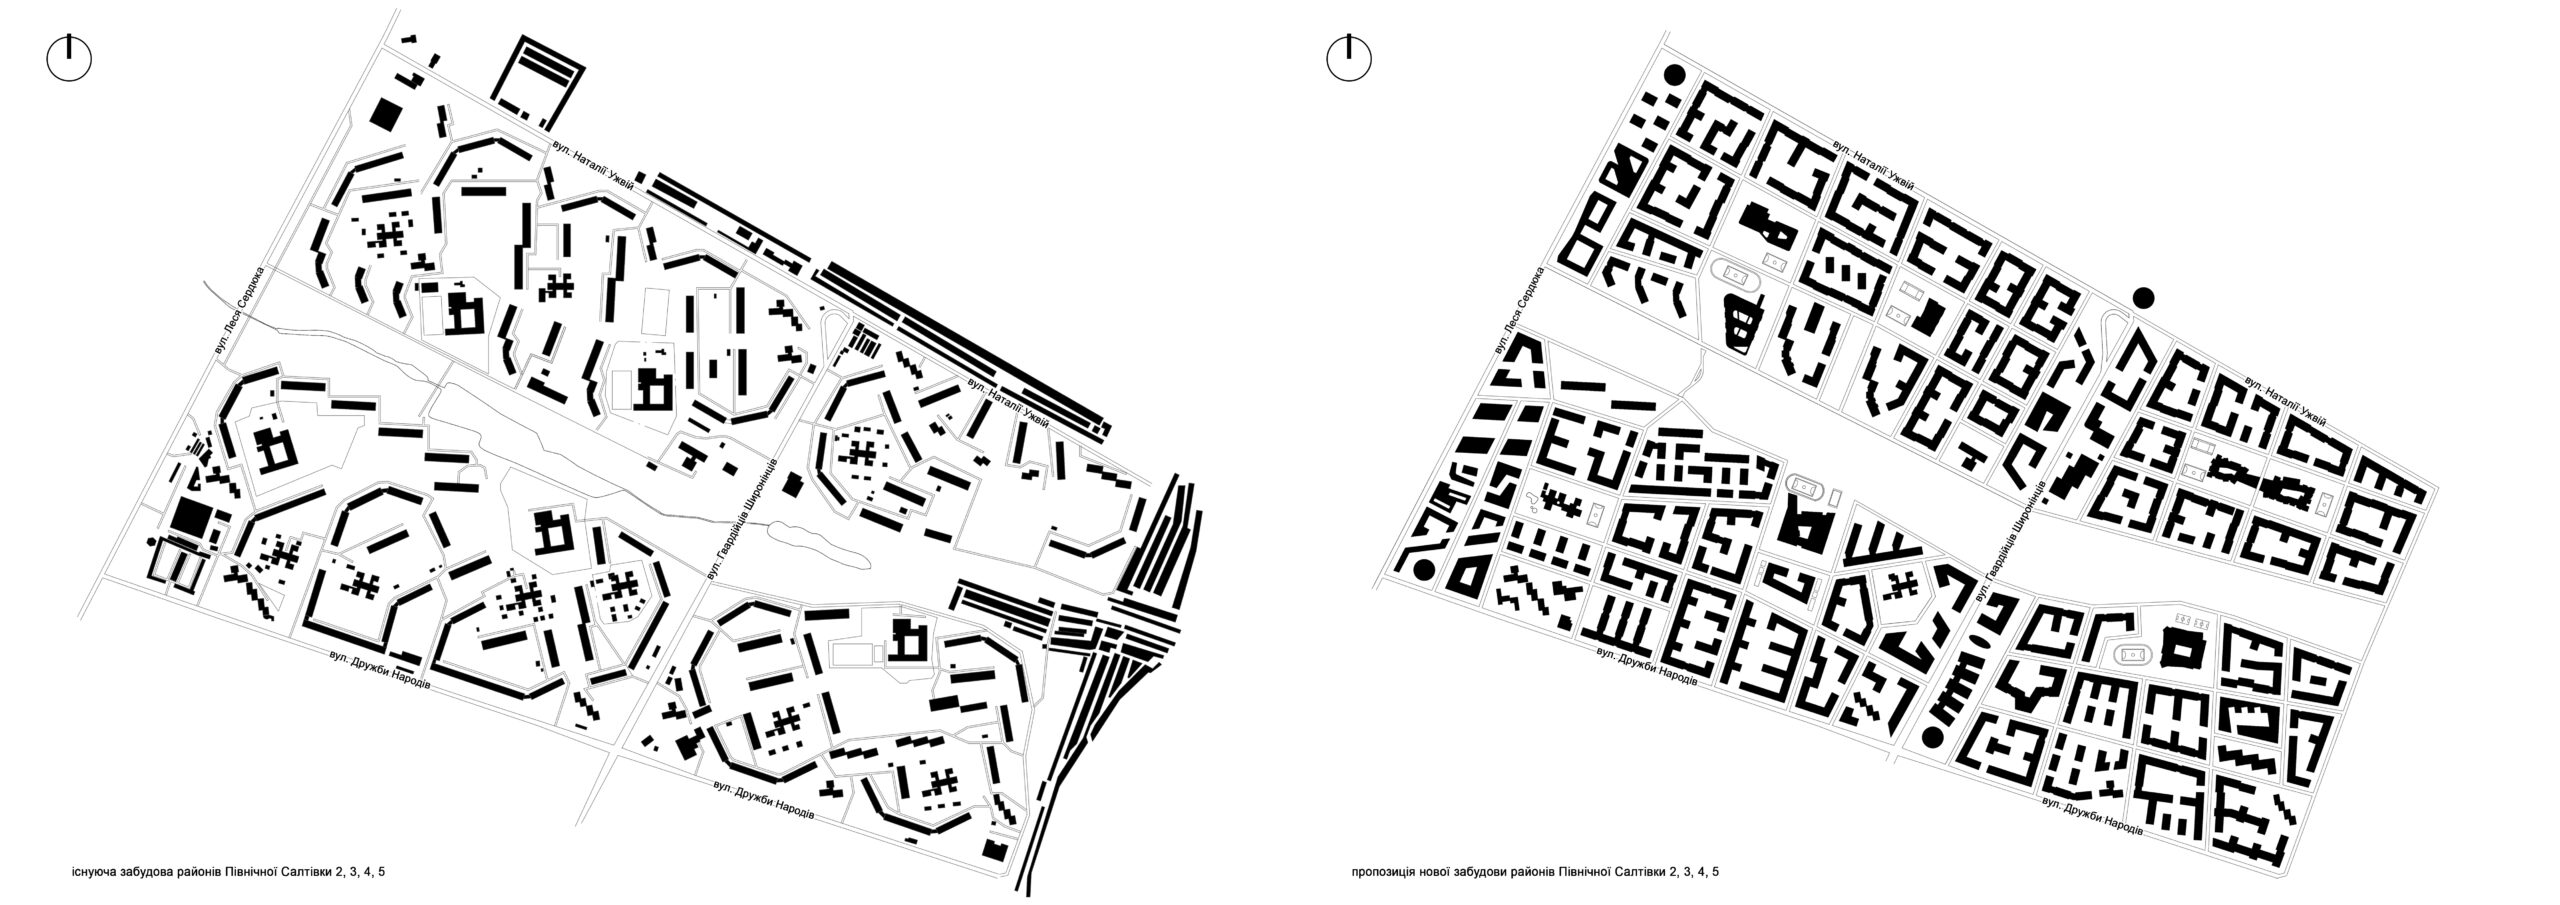 Концепція забудови мікрорайону Північна Салтівка від архітектурної студії EgoHouse. Зліва - теперешнє розташування будинків, справа – проєкт, що пропонується. Пропонується щільніша забудова мікрорайону, але  6-поверхівками, а не 9- і 16-поверхівками, як нині. Малюнок - з сайту студії.